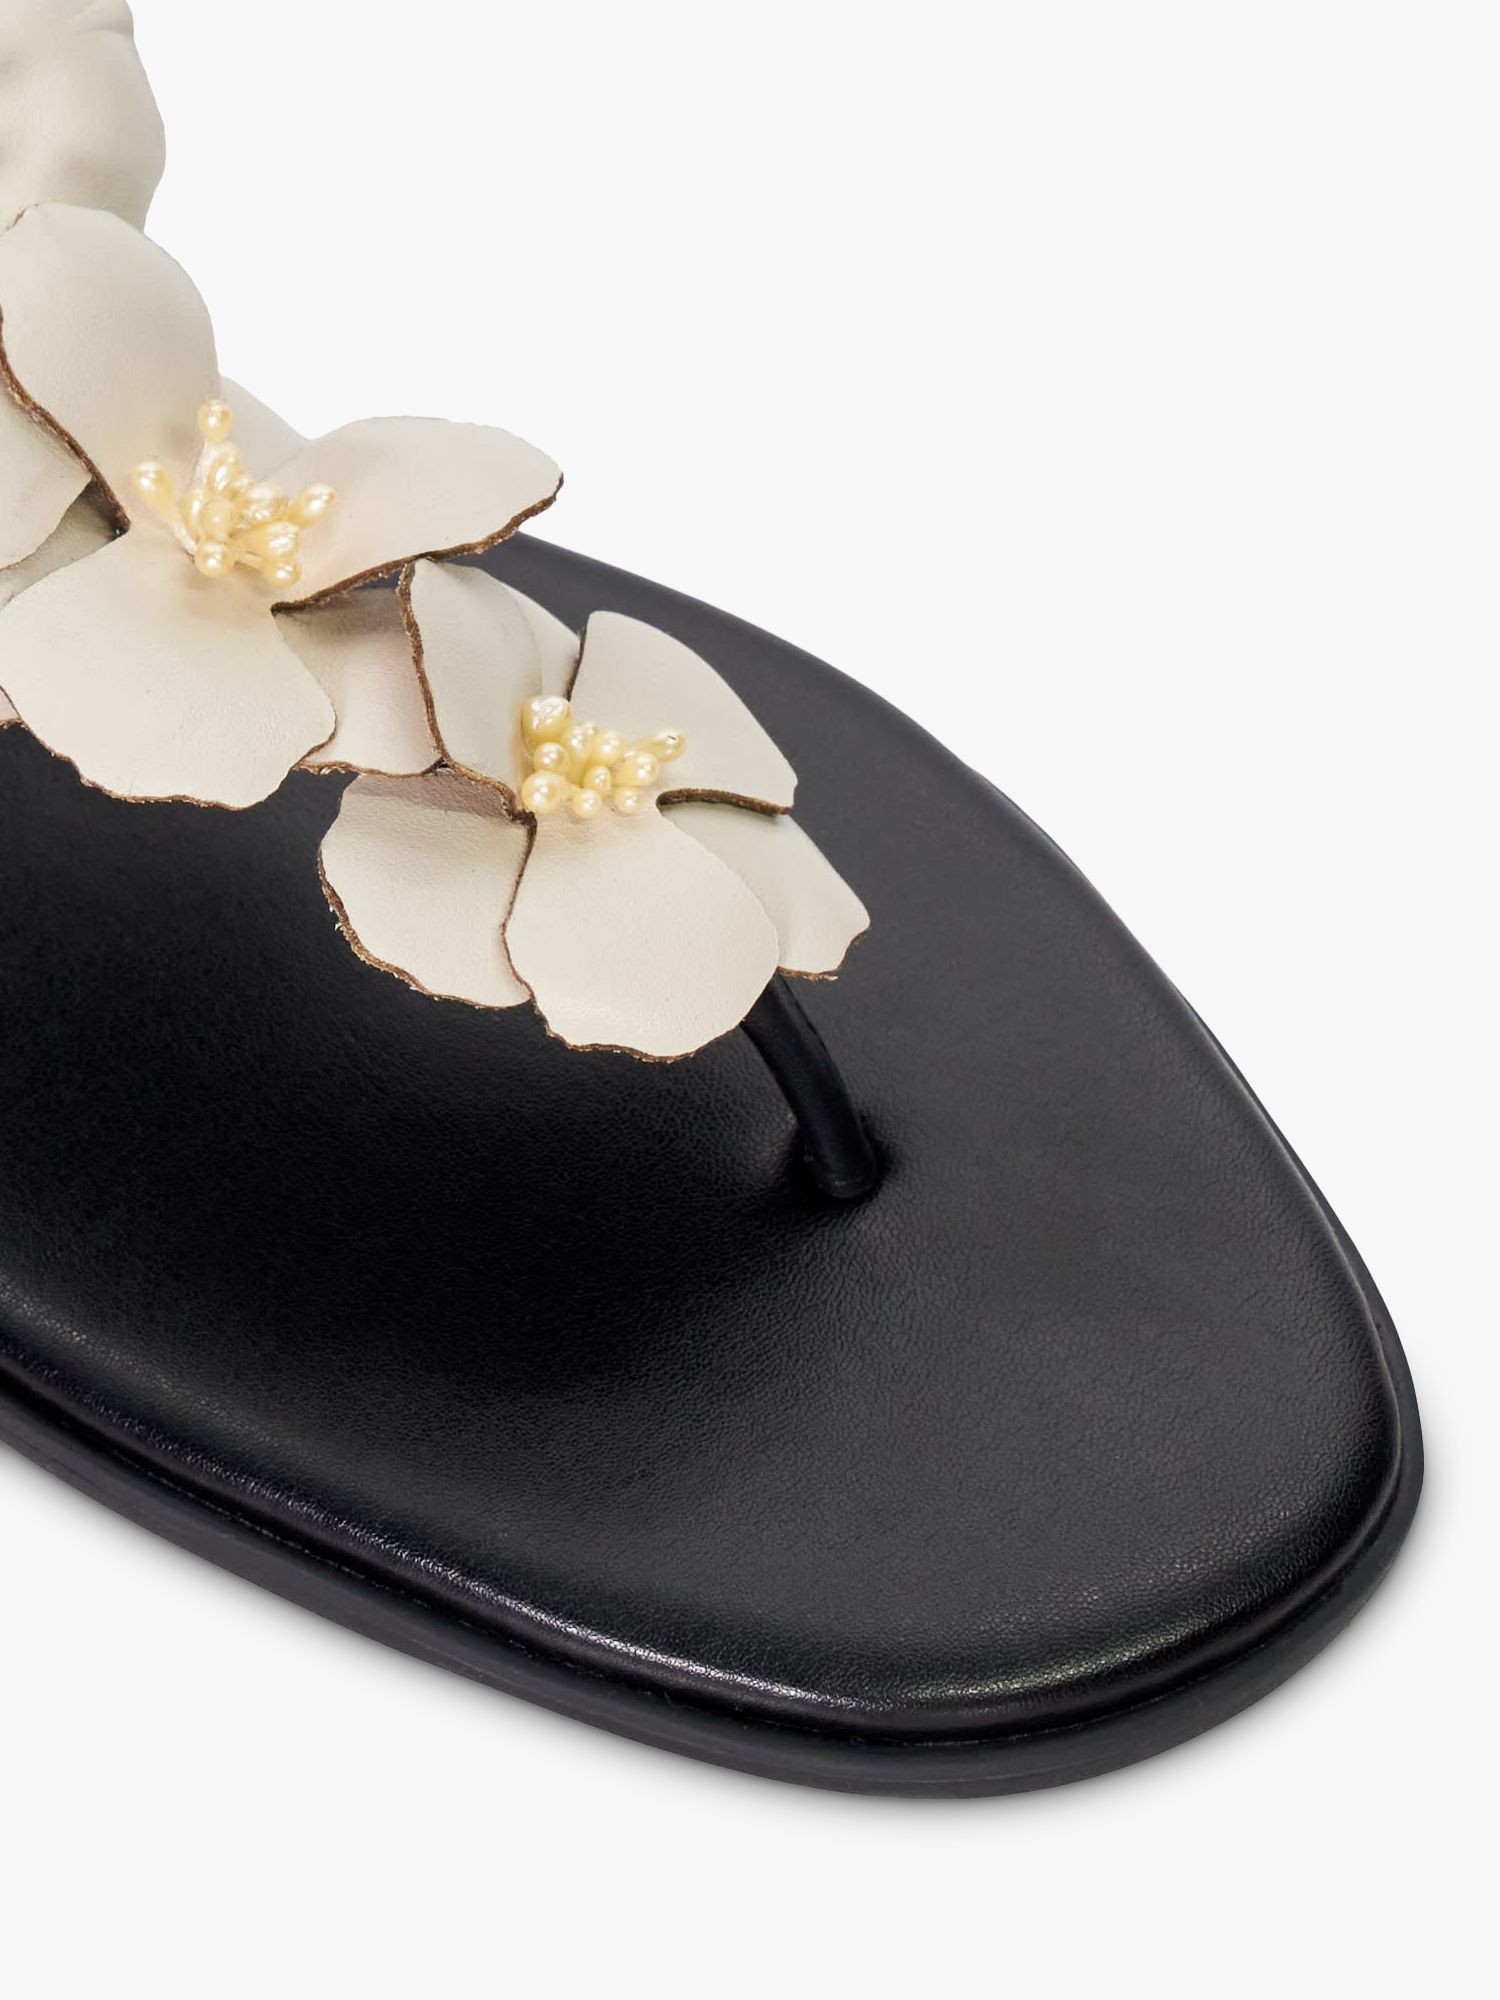 Buy Dune Linaria Floral Embellished Leather Toe Post Sandals, Black Online at johnlewis.com